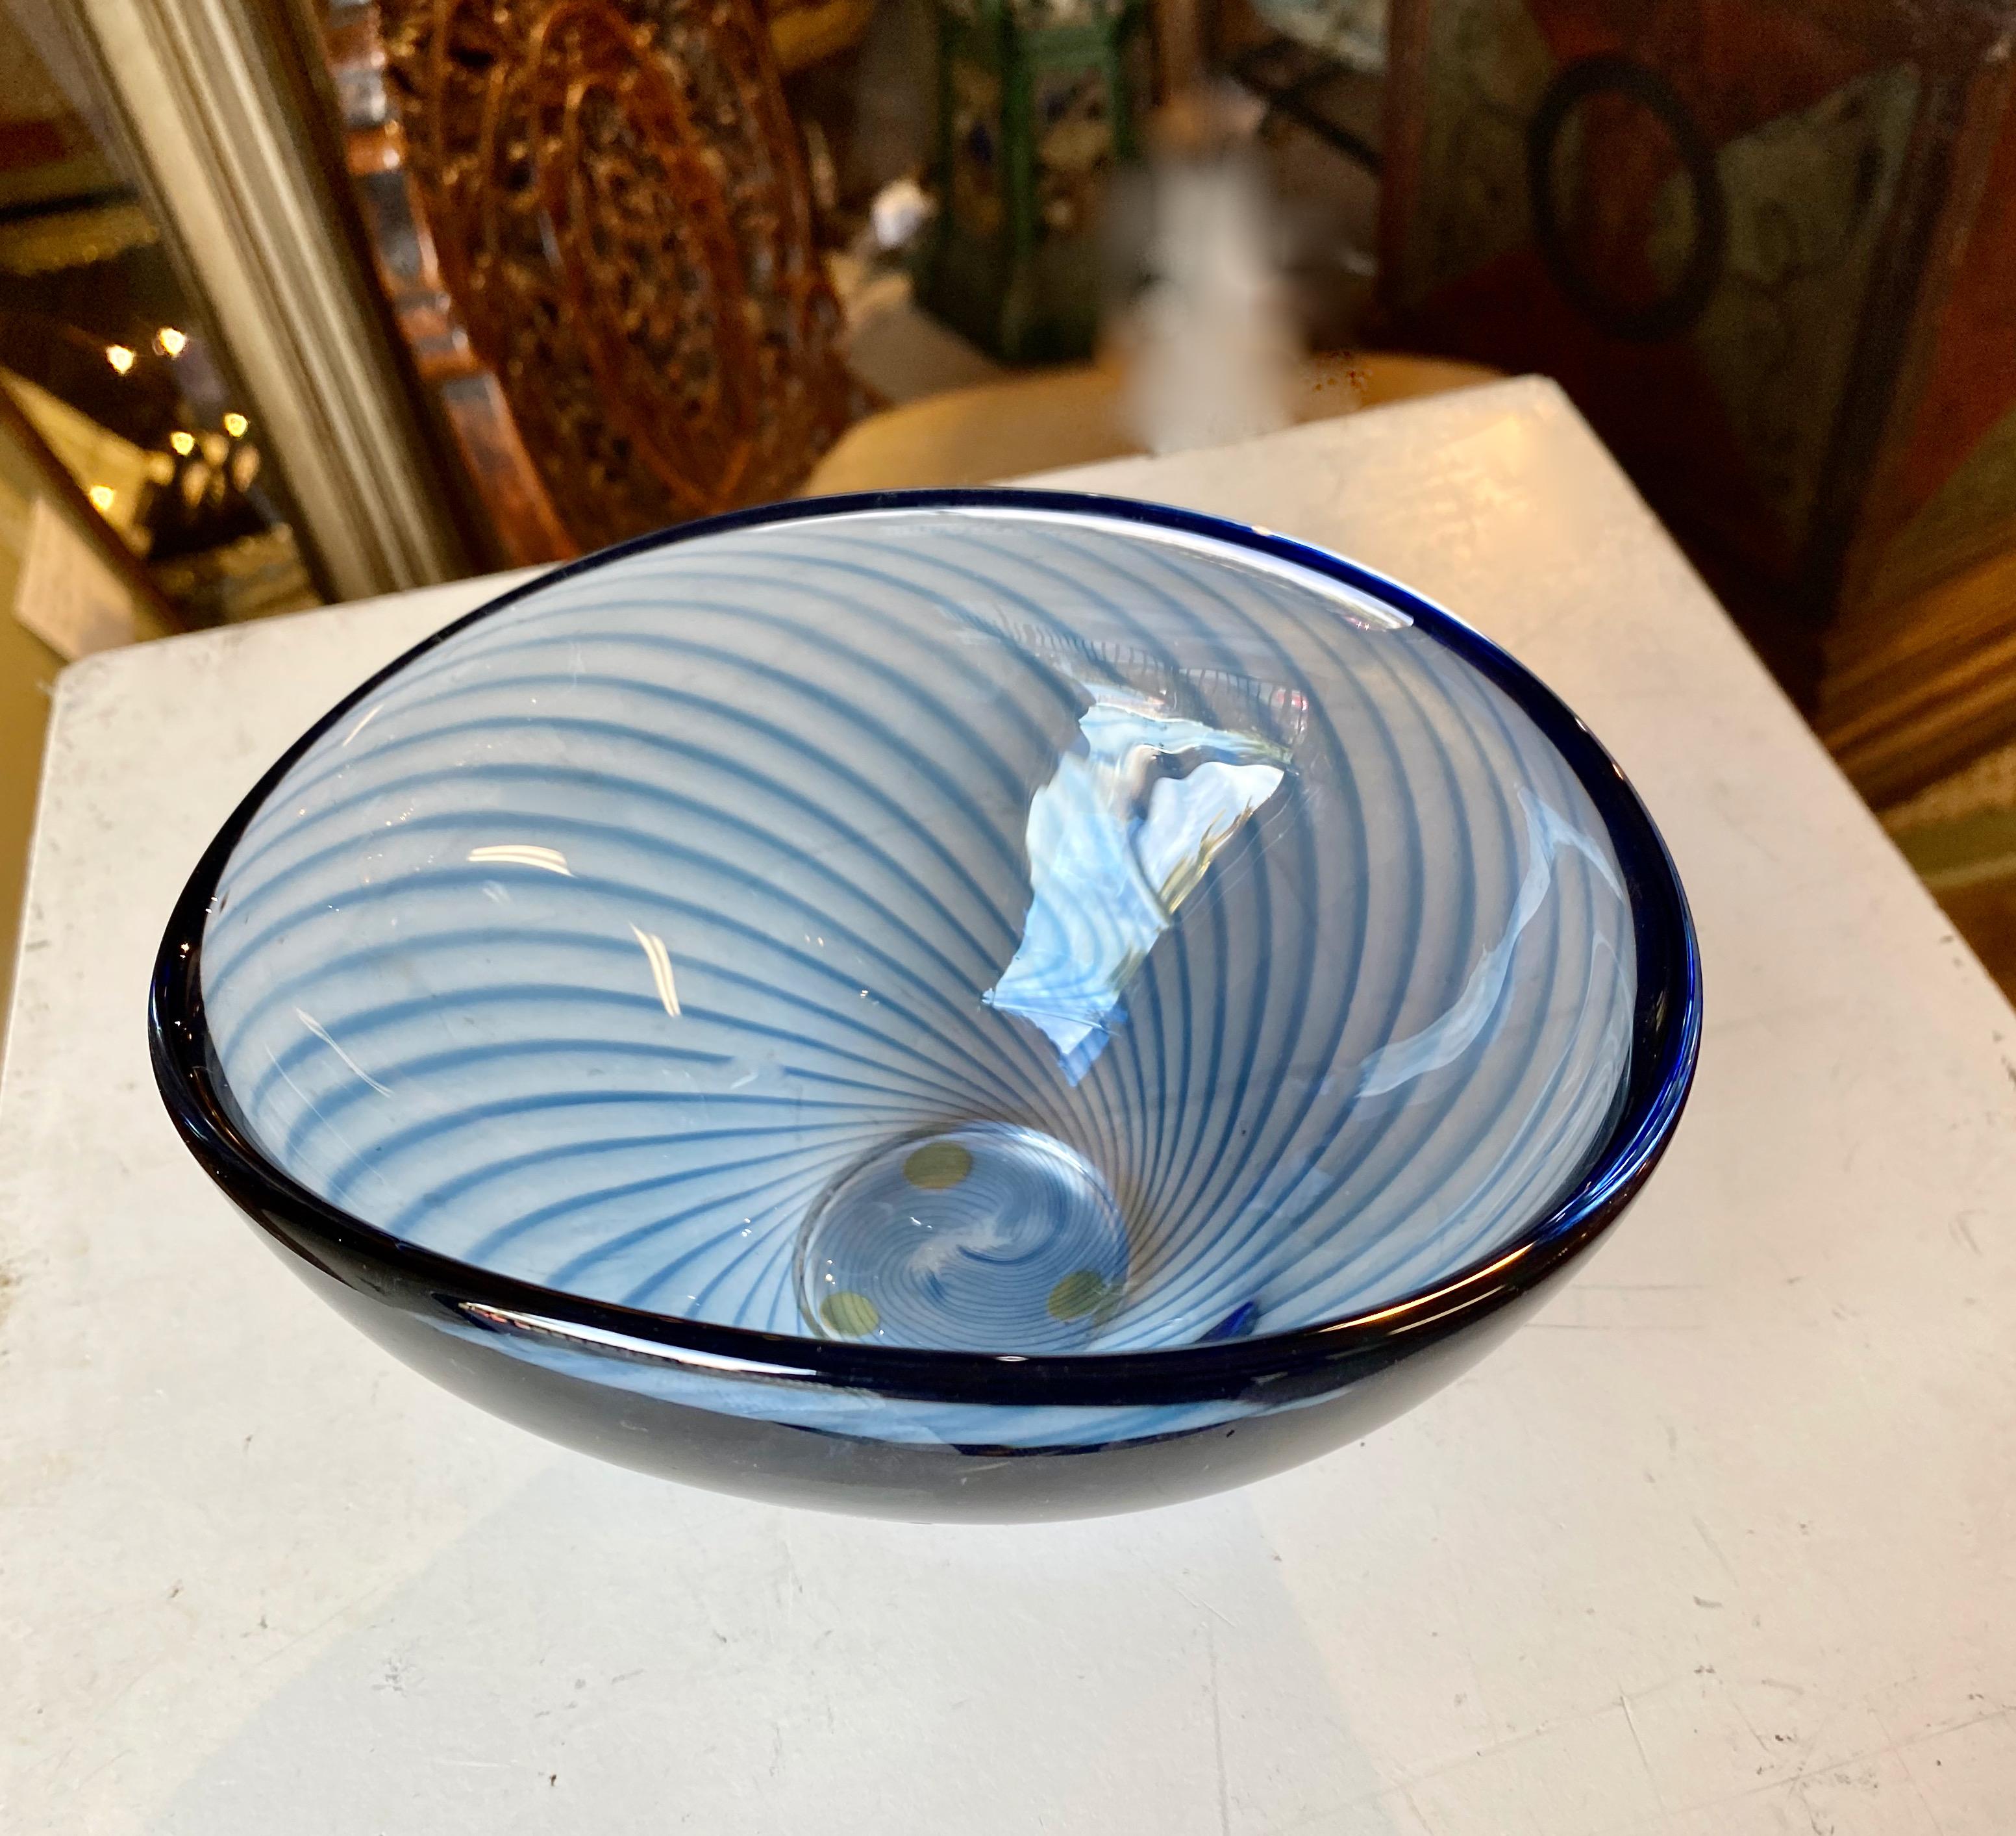 Il s'agit d'un magnifique bol en verre filigrané soufflé à la bouche dont le design est attribué à Vicke Lindstrom pour Kosta Boda. Le bol est d'une qualité exceptionnelle et est créé dans un étonnant verre bleu vibrant avec des détails en filigrane